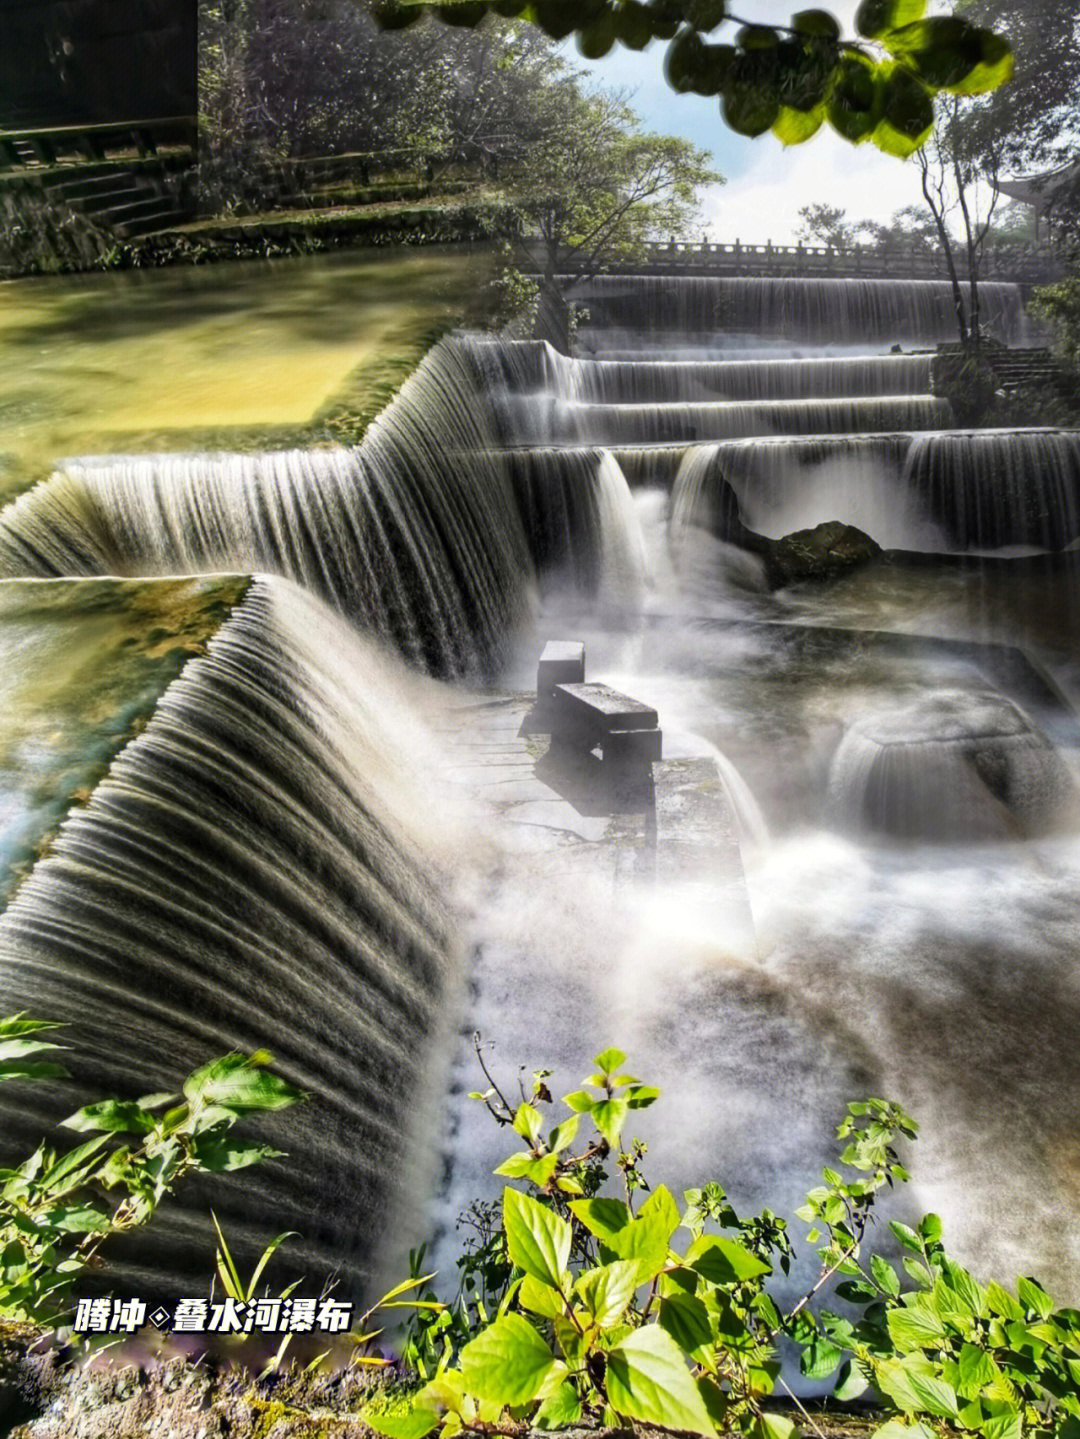 叠水河瀑布集自然风光和人文景观与一体